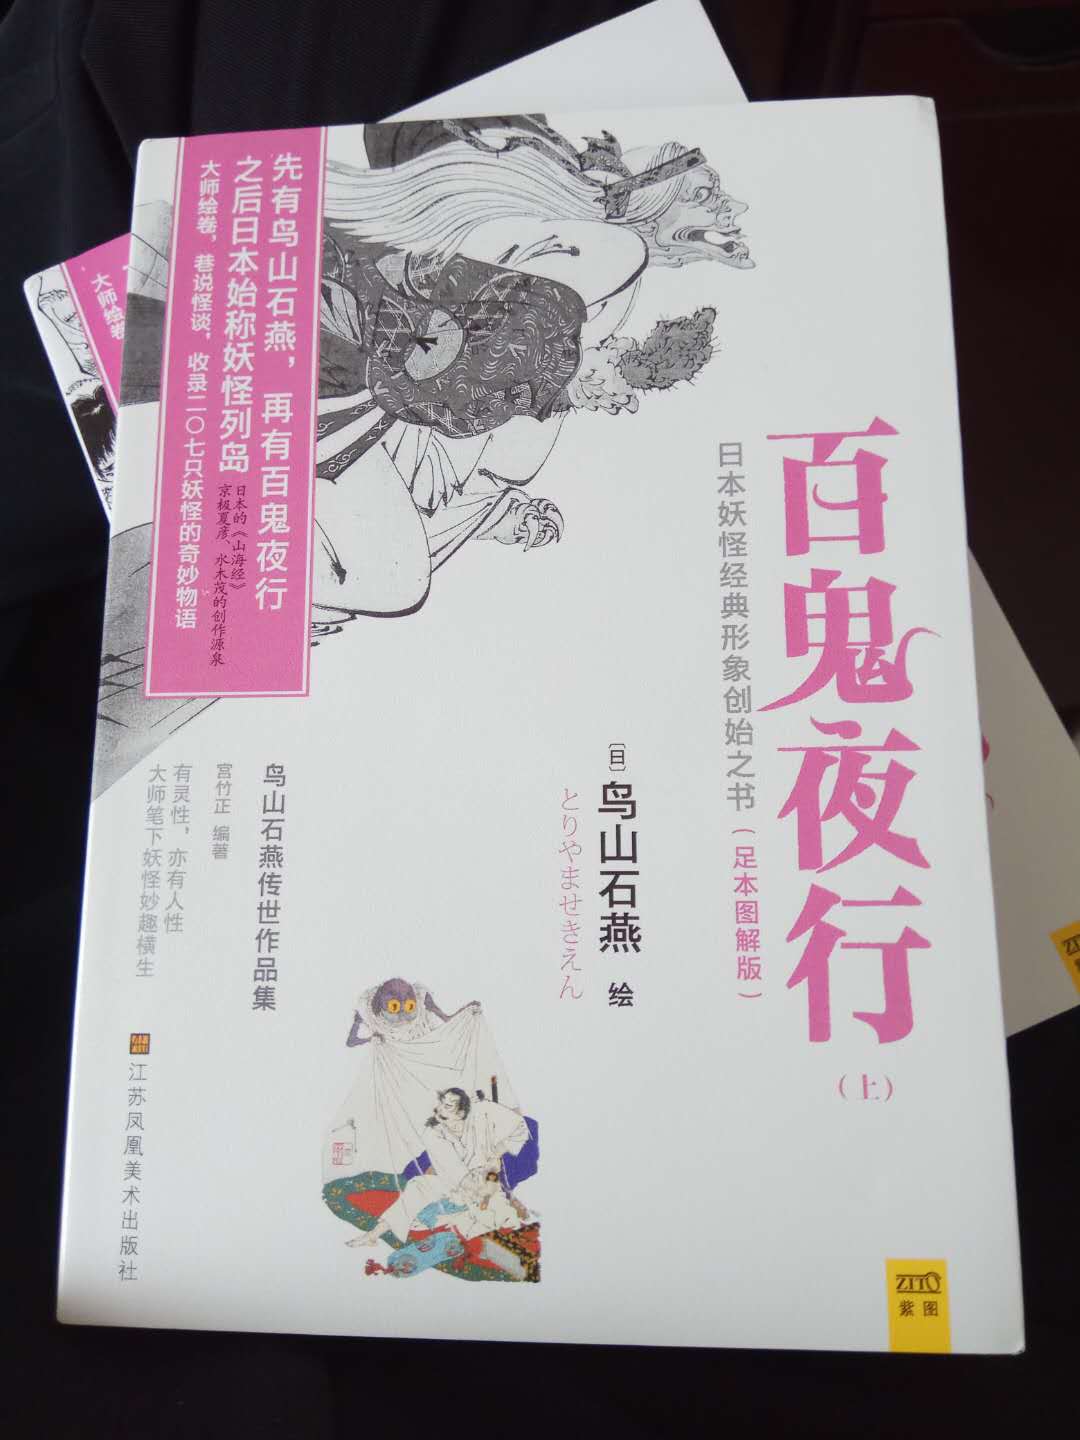 书质量不错   想了解一下日本的妖怪文化